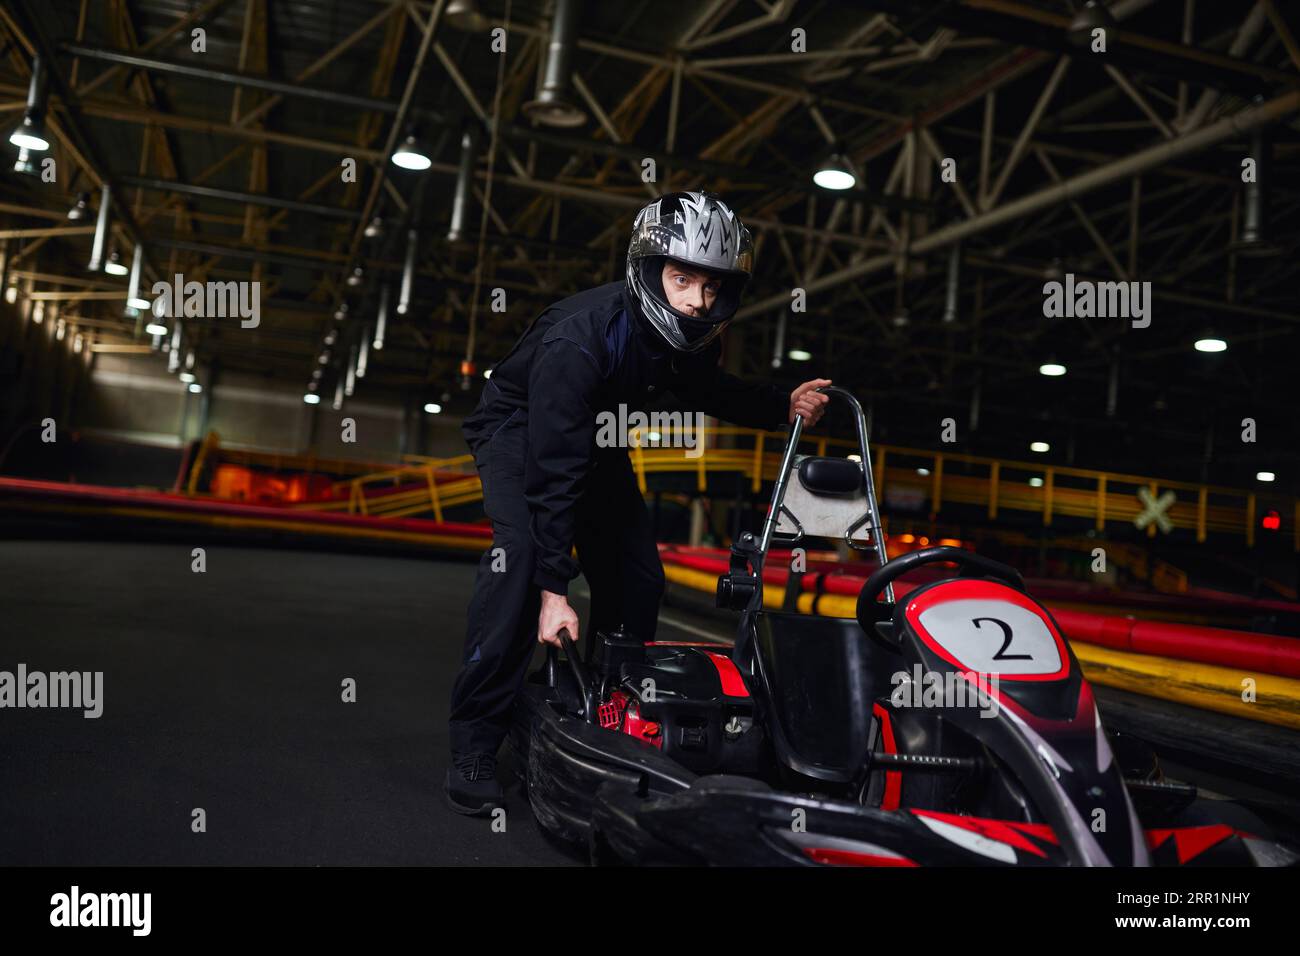 motorsport et speed drive, pilote de kart concentré en sportswear et casque poussant le kart sur circuit Banque D'Images